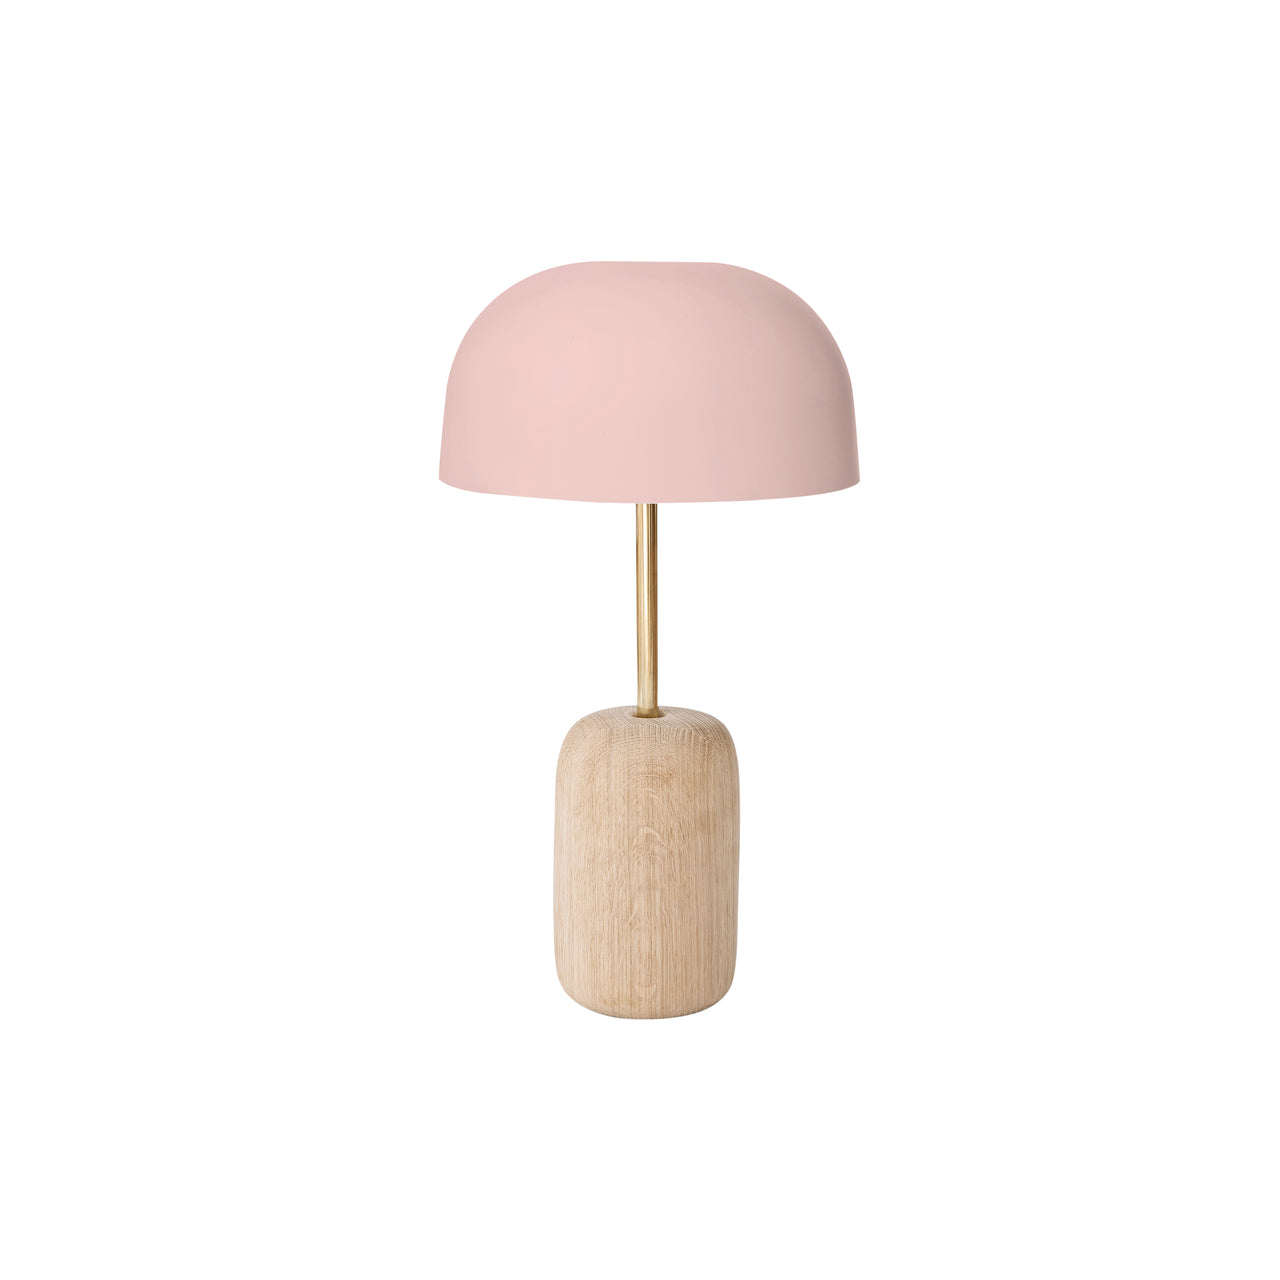 Nina Table Lamp: Nude Pink